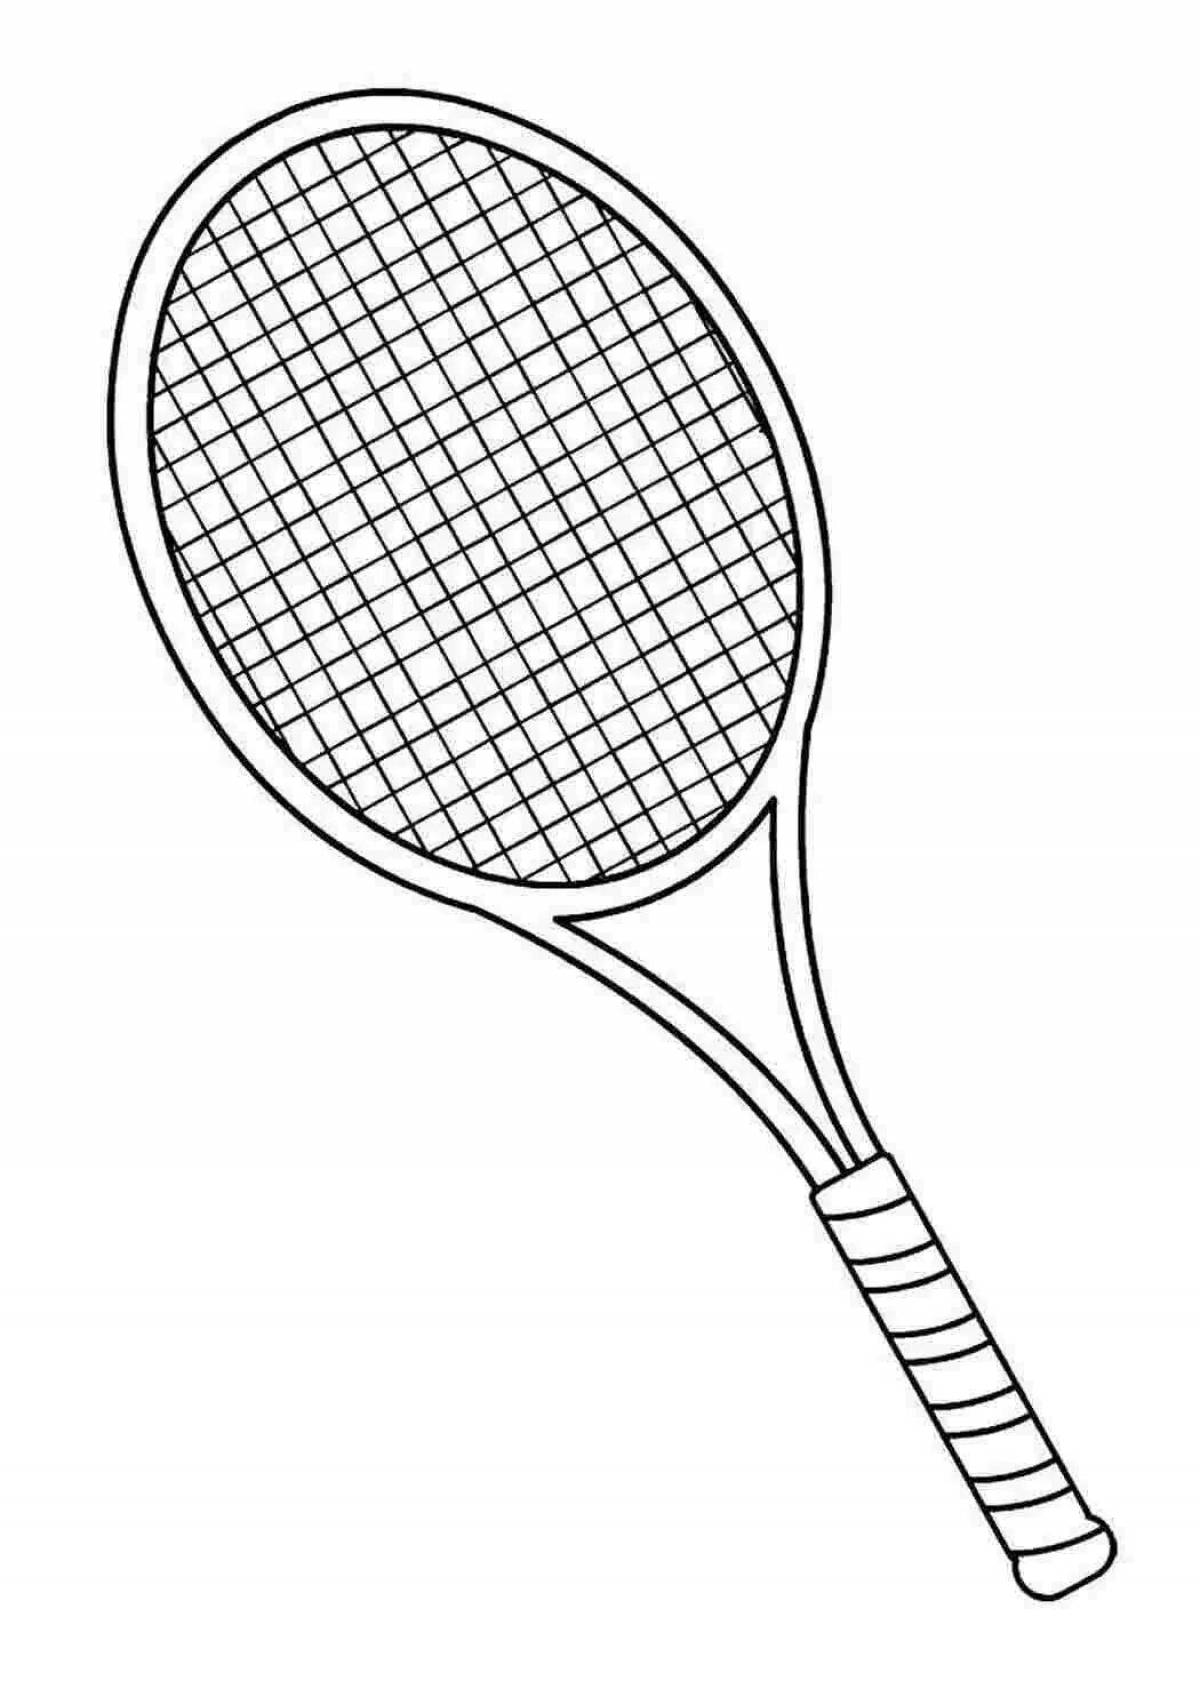 Теннис ракетка черно белая